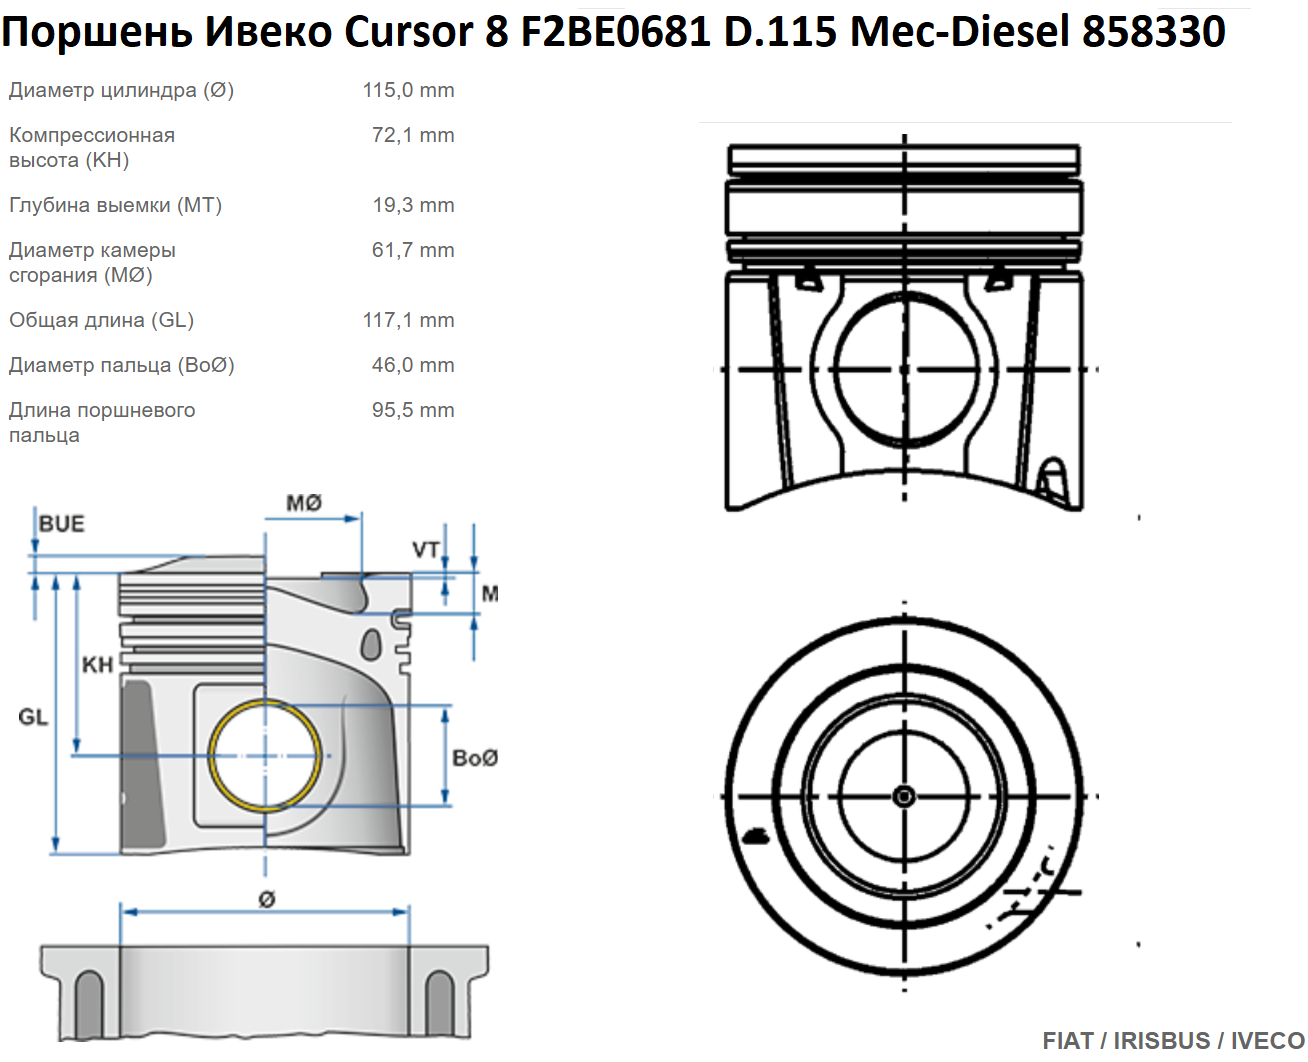 Поршень Ивеко Cursor 8 F2BE0681 D.115 Mec-Diesel 858330